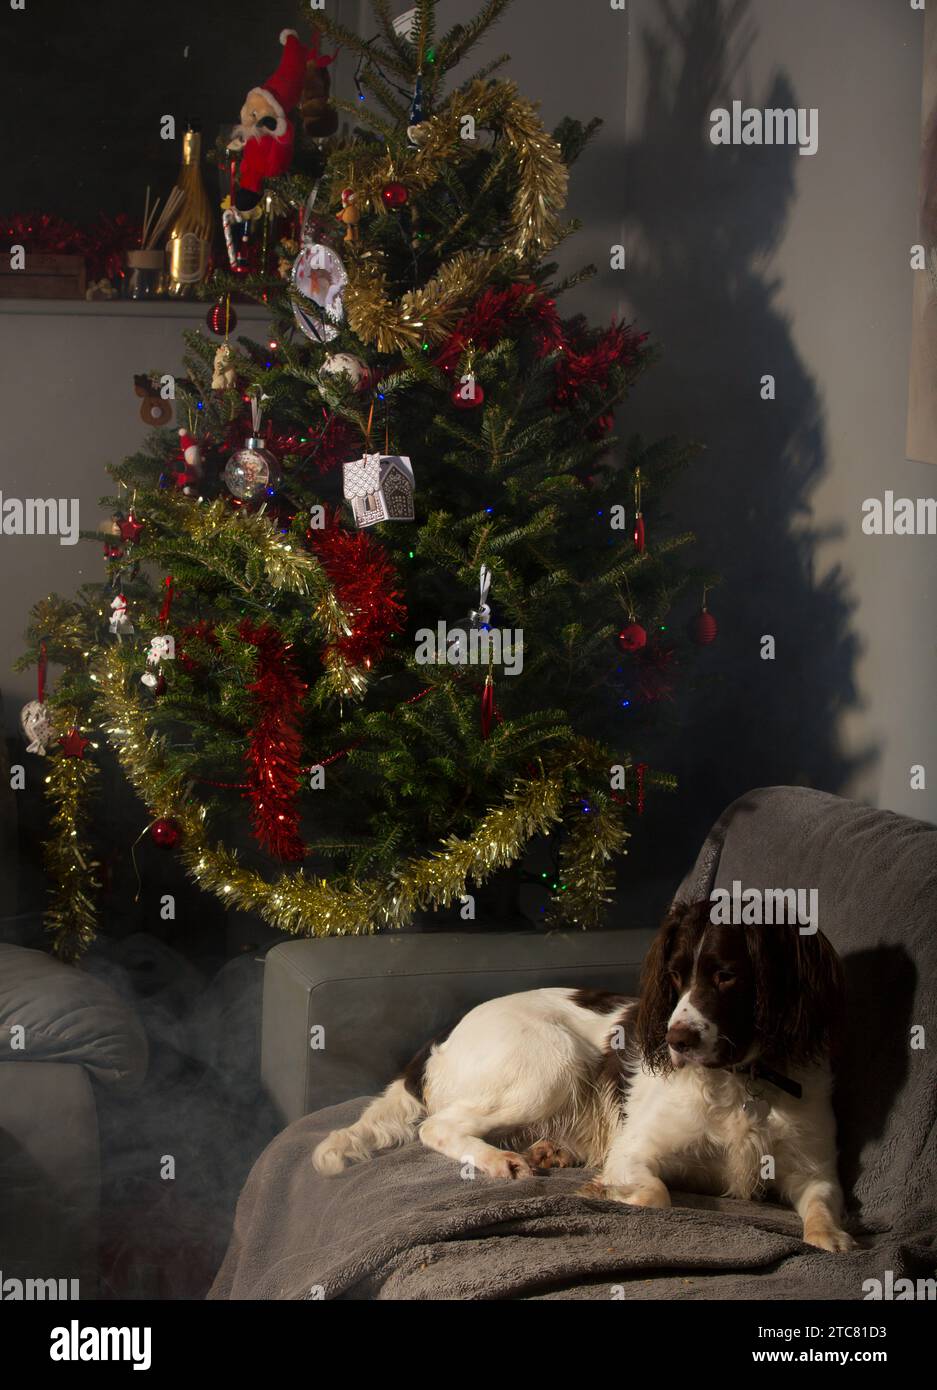 Englischer springer Spaniel auf Couch mit Weihnachtsbaum und Lichtern und Dekorationen. Stockfoto